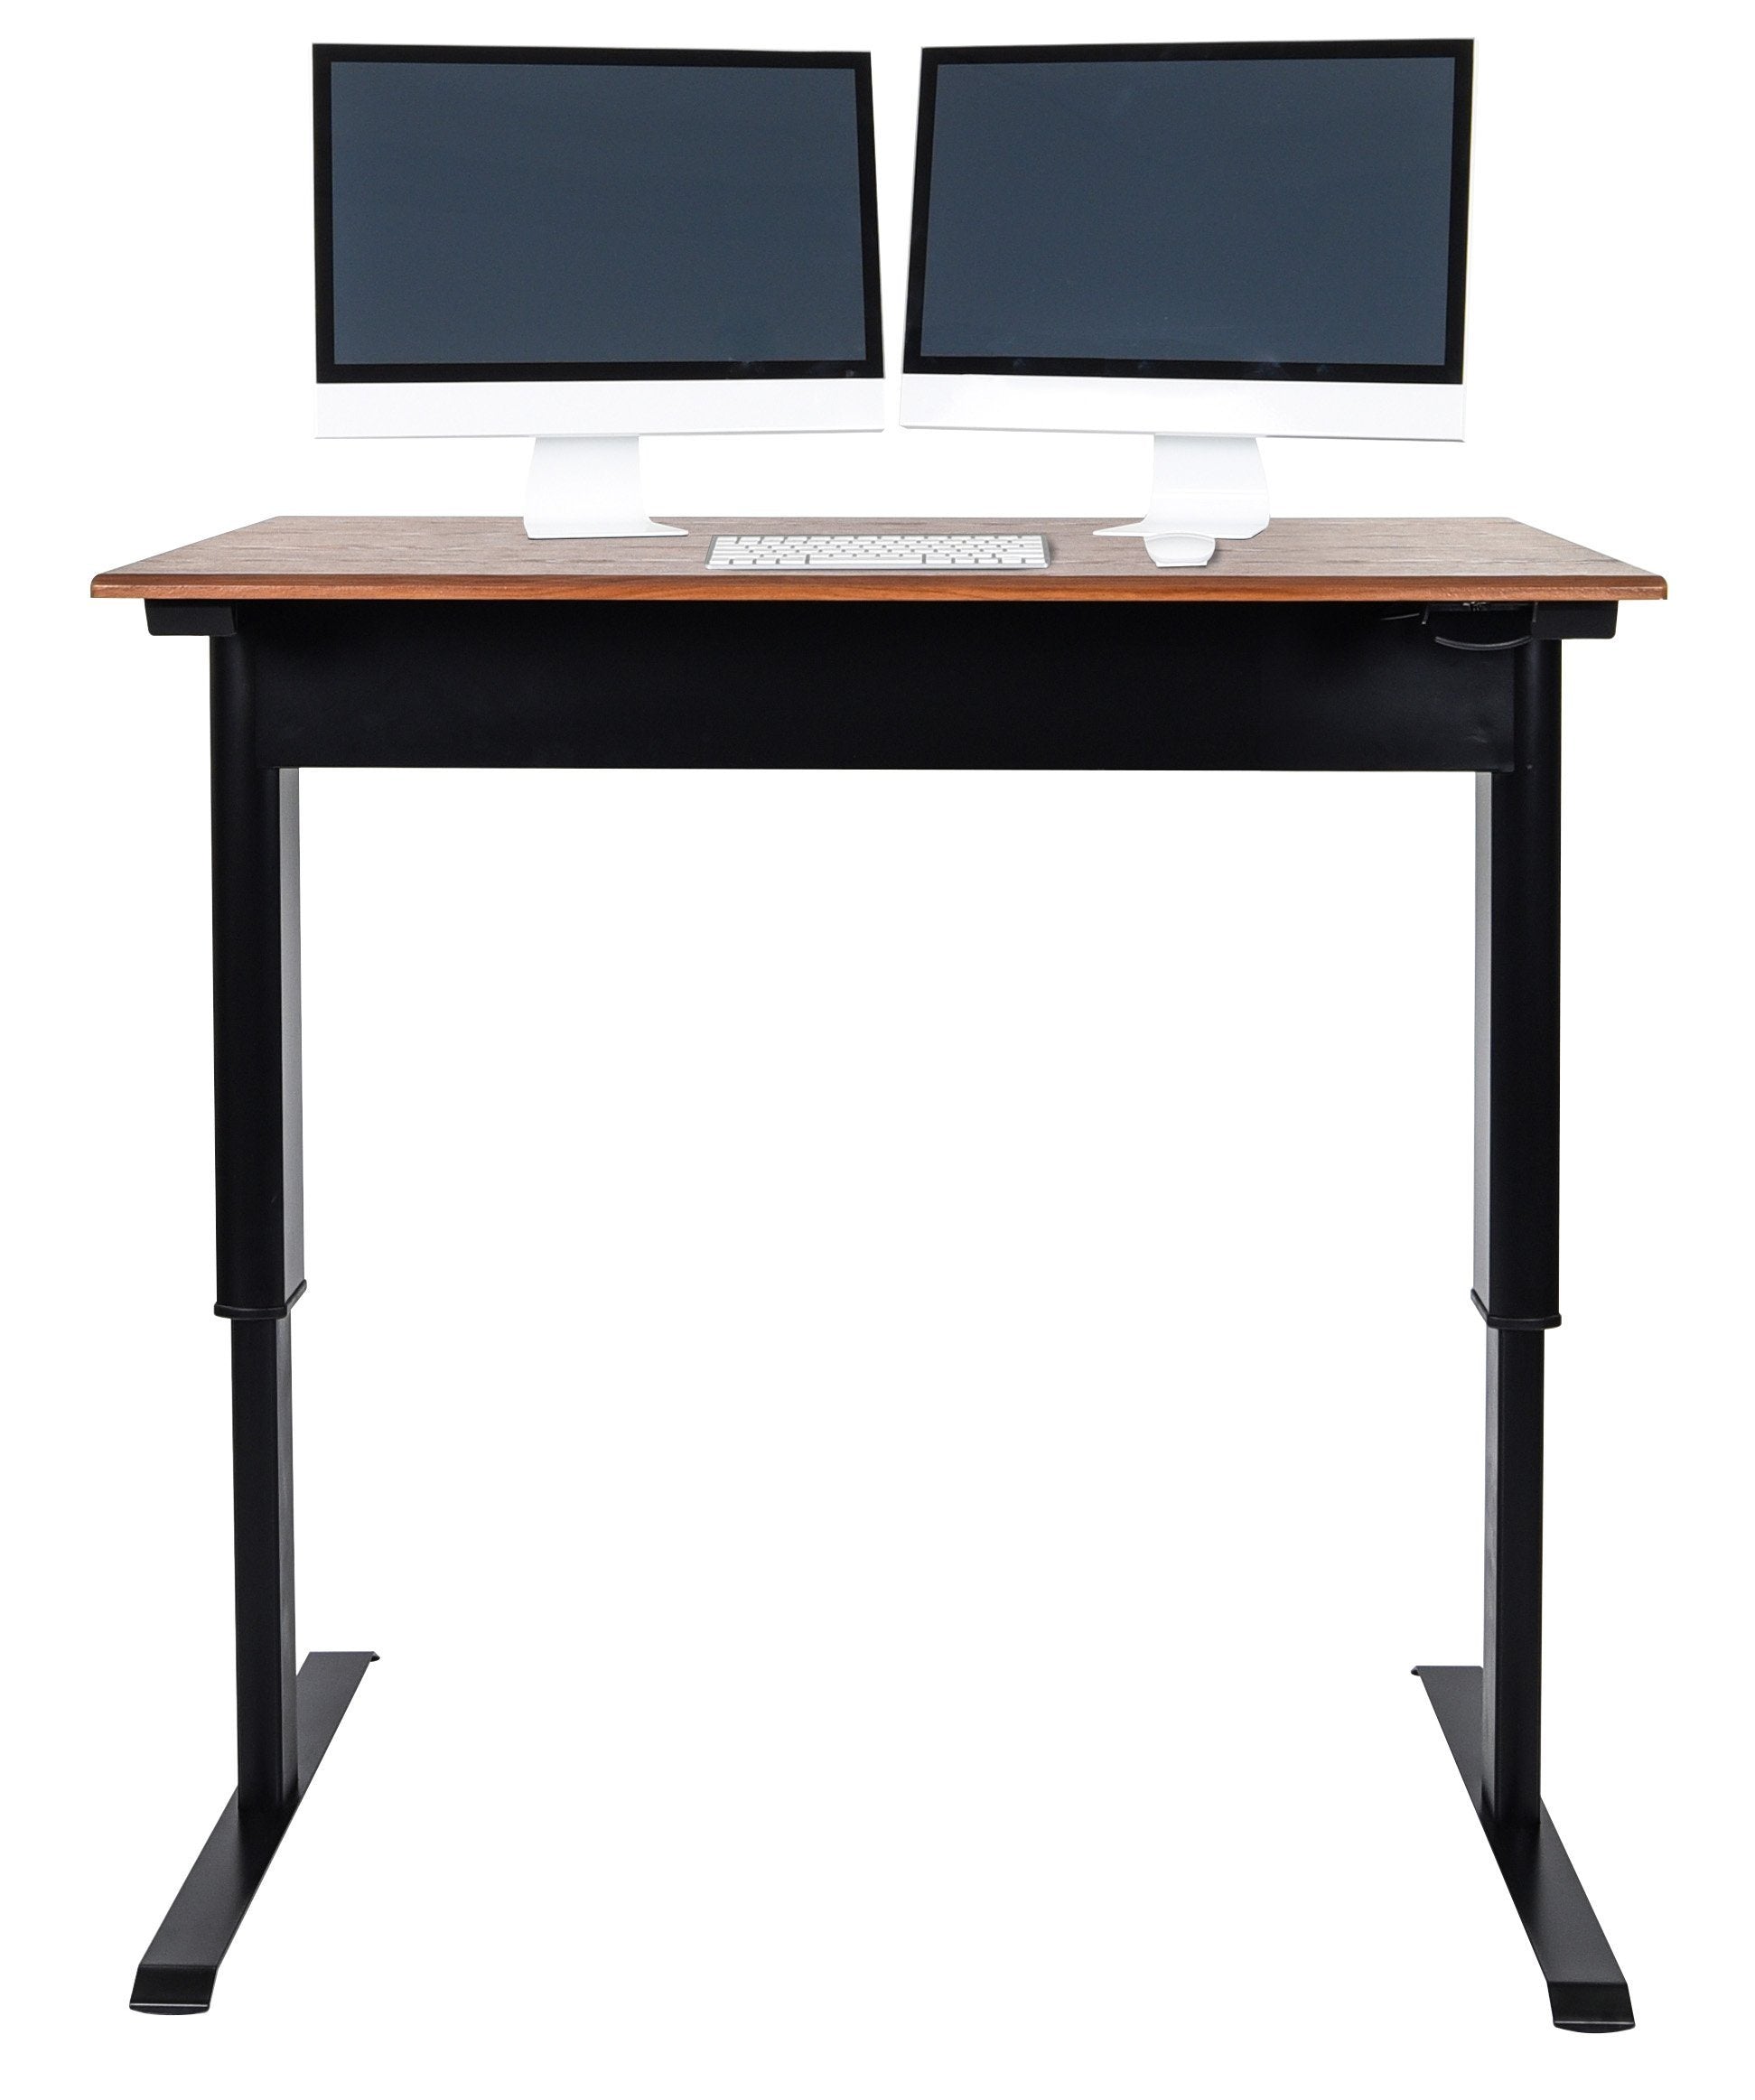 Luxor Pneumatic Adjustable Height Standing Desk